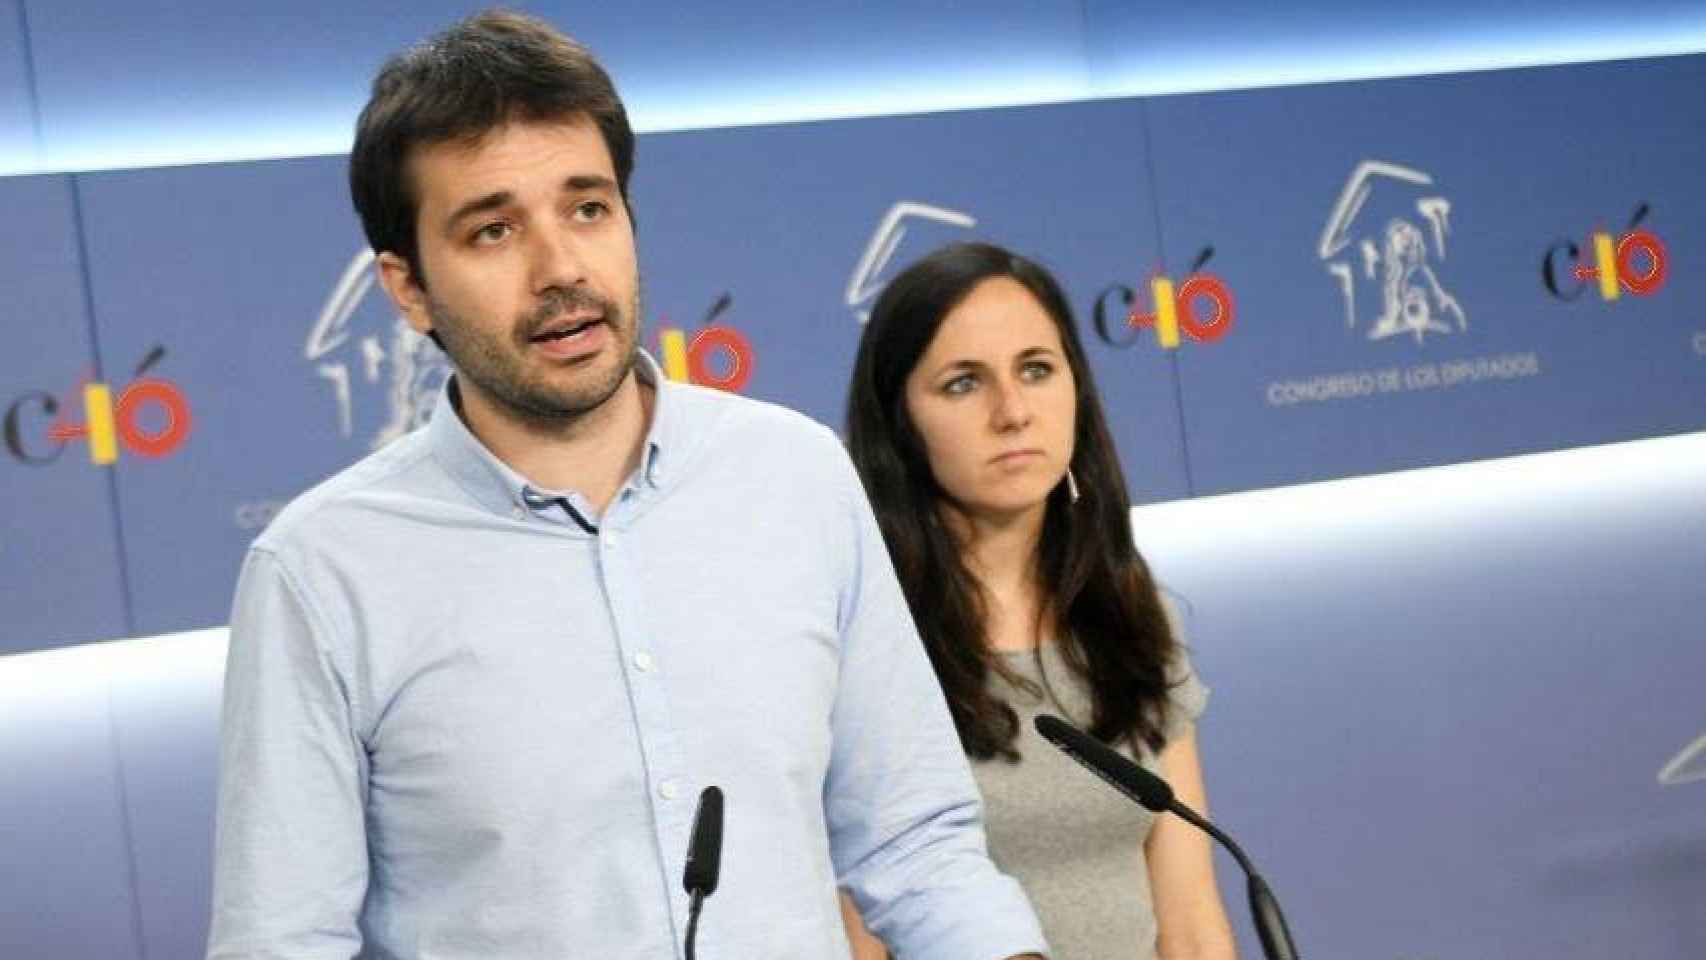 Javier Sánchez junto a Ione Bellara en el Congreso de los Diputados.